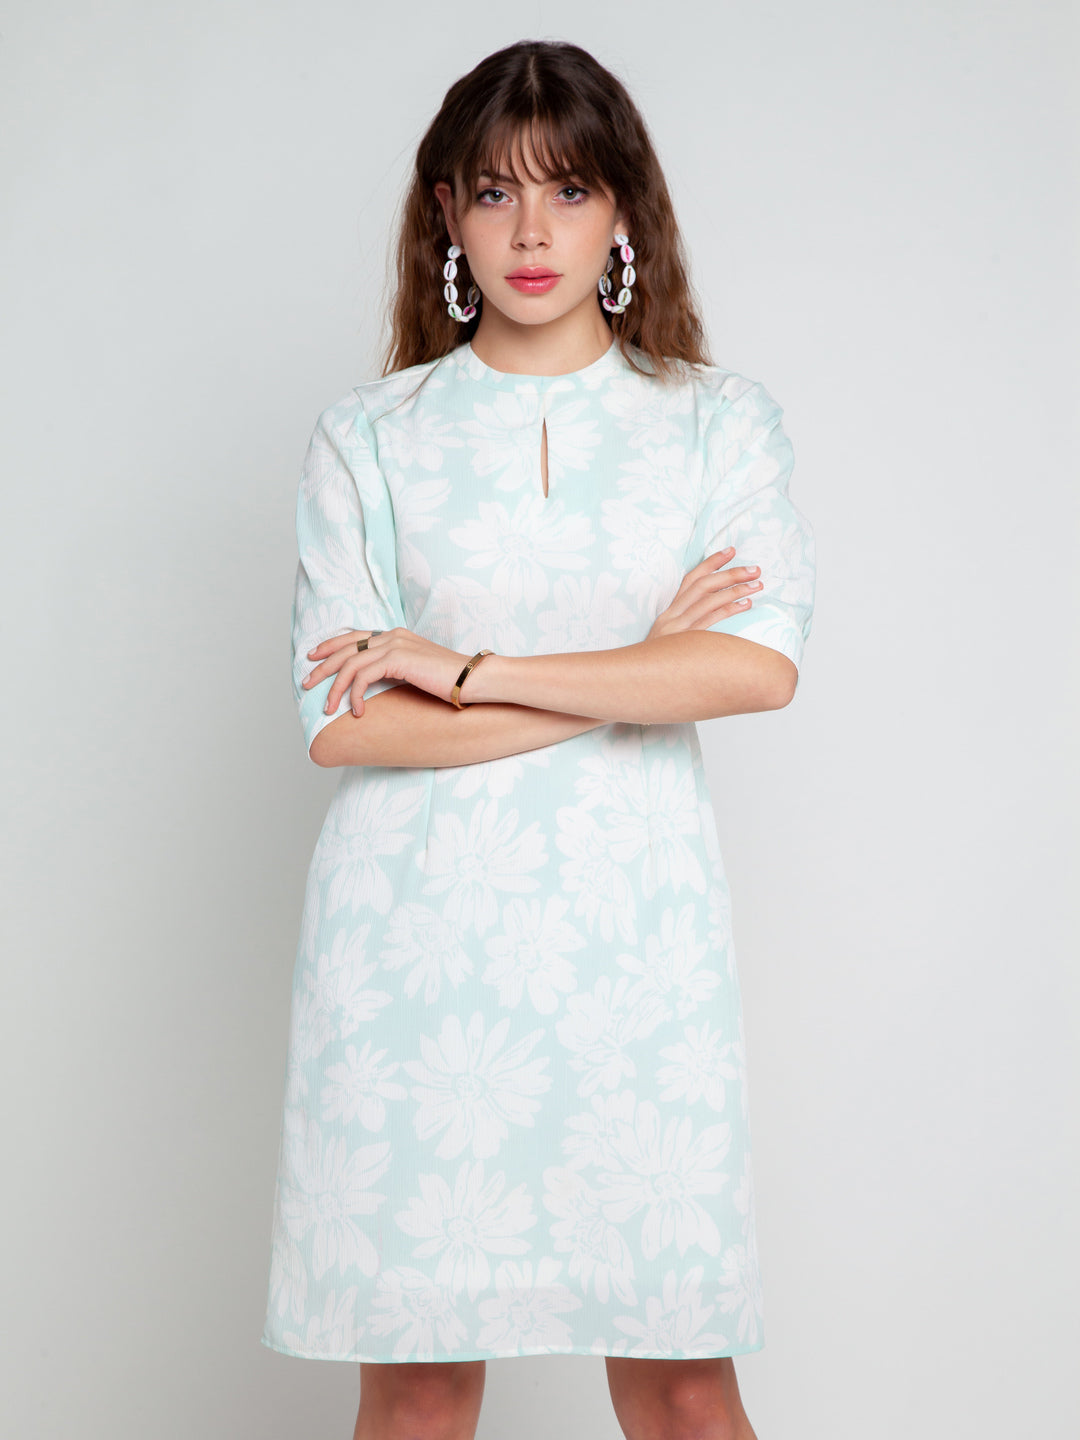 Blue Printed Short Dress For Women